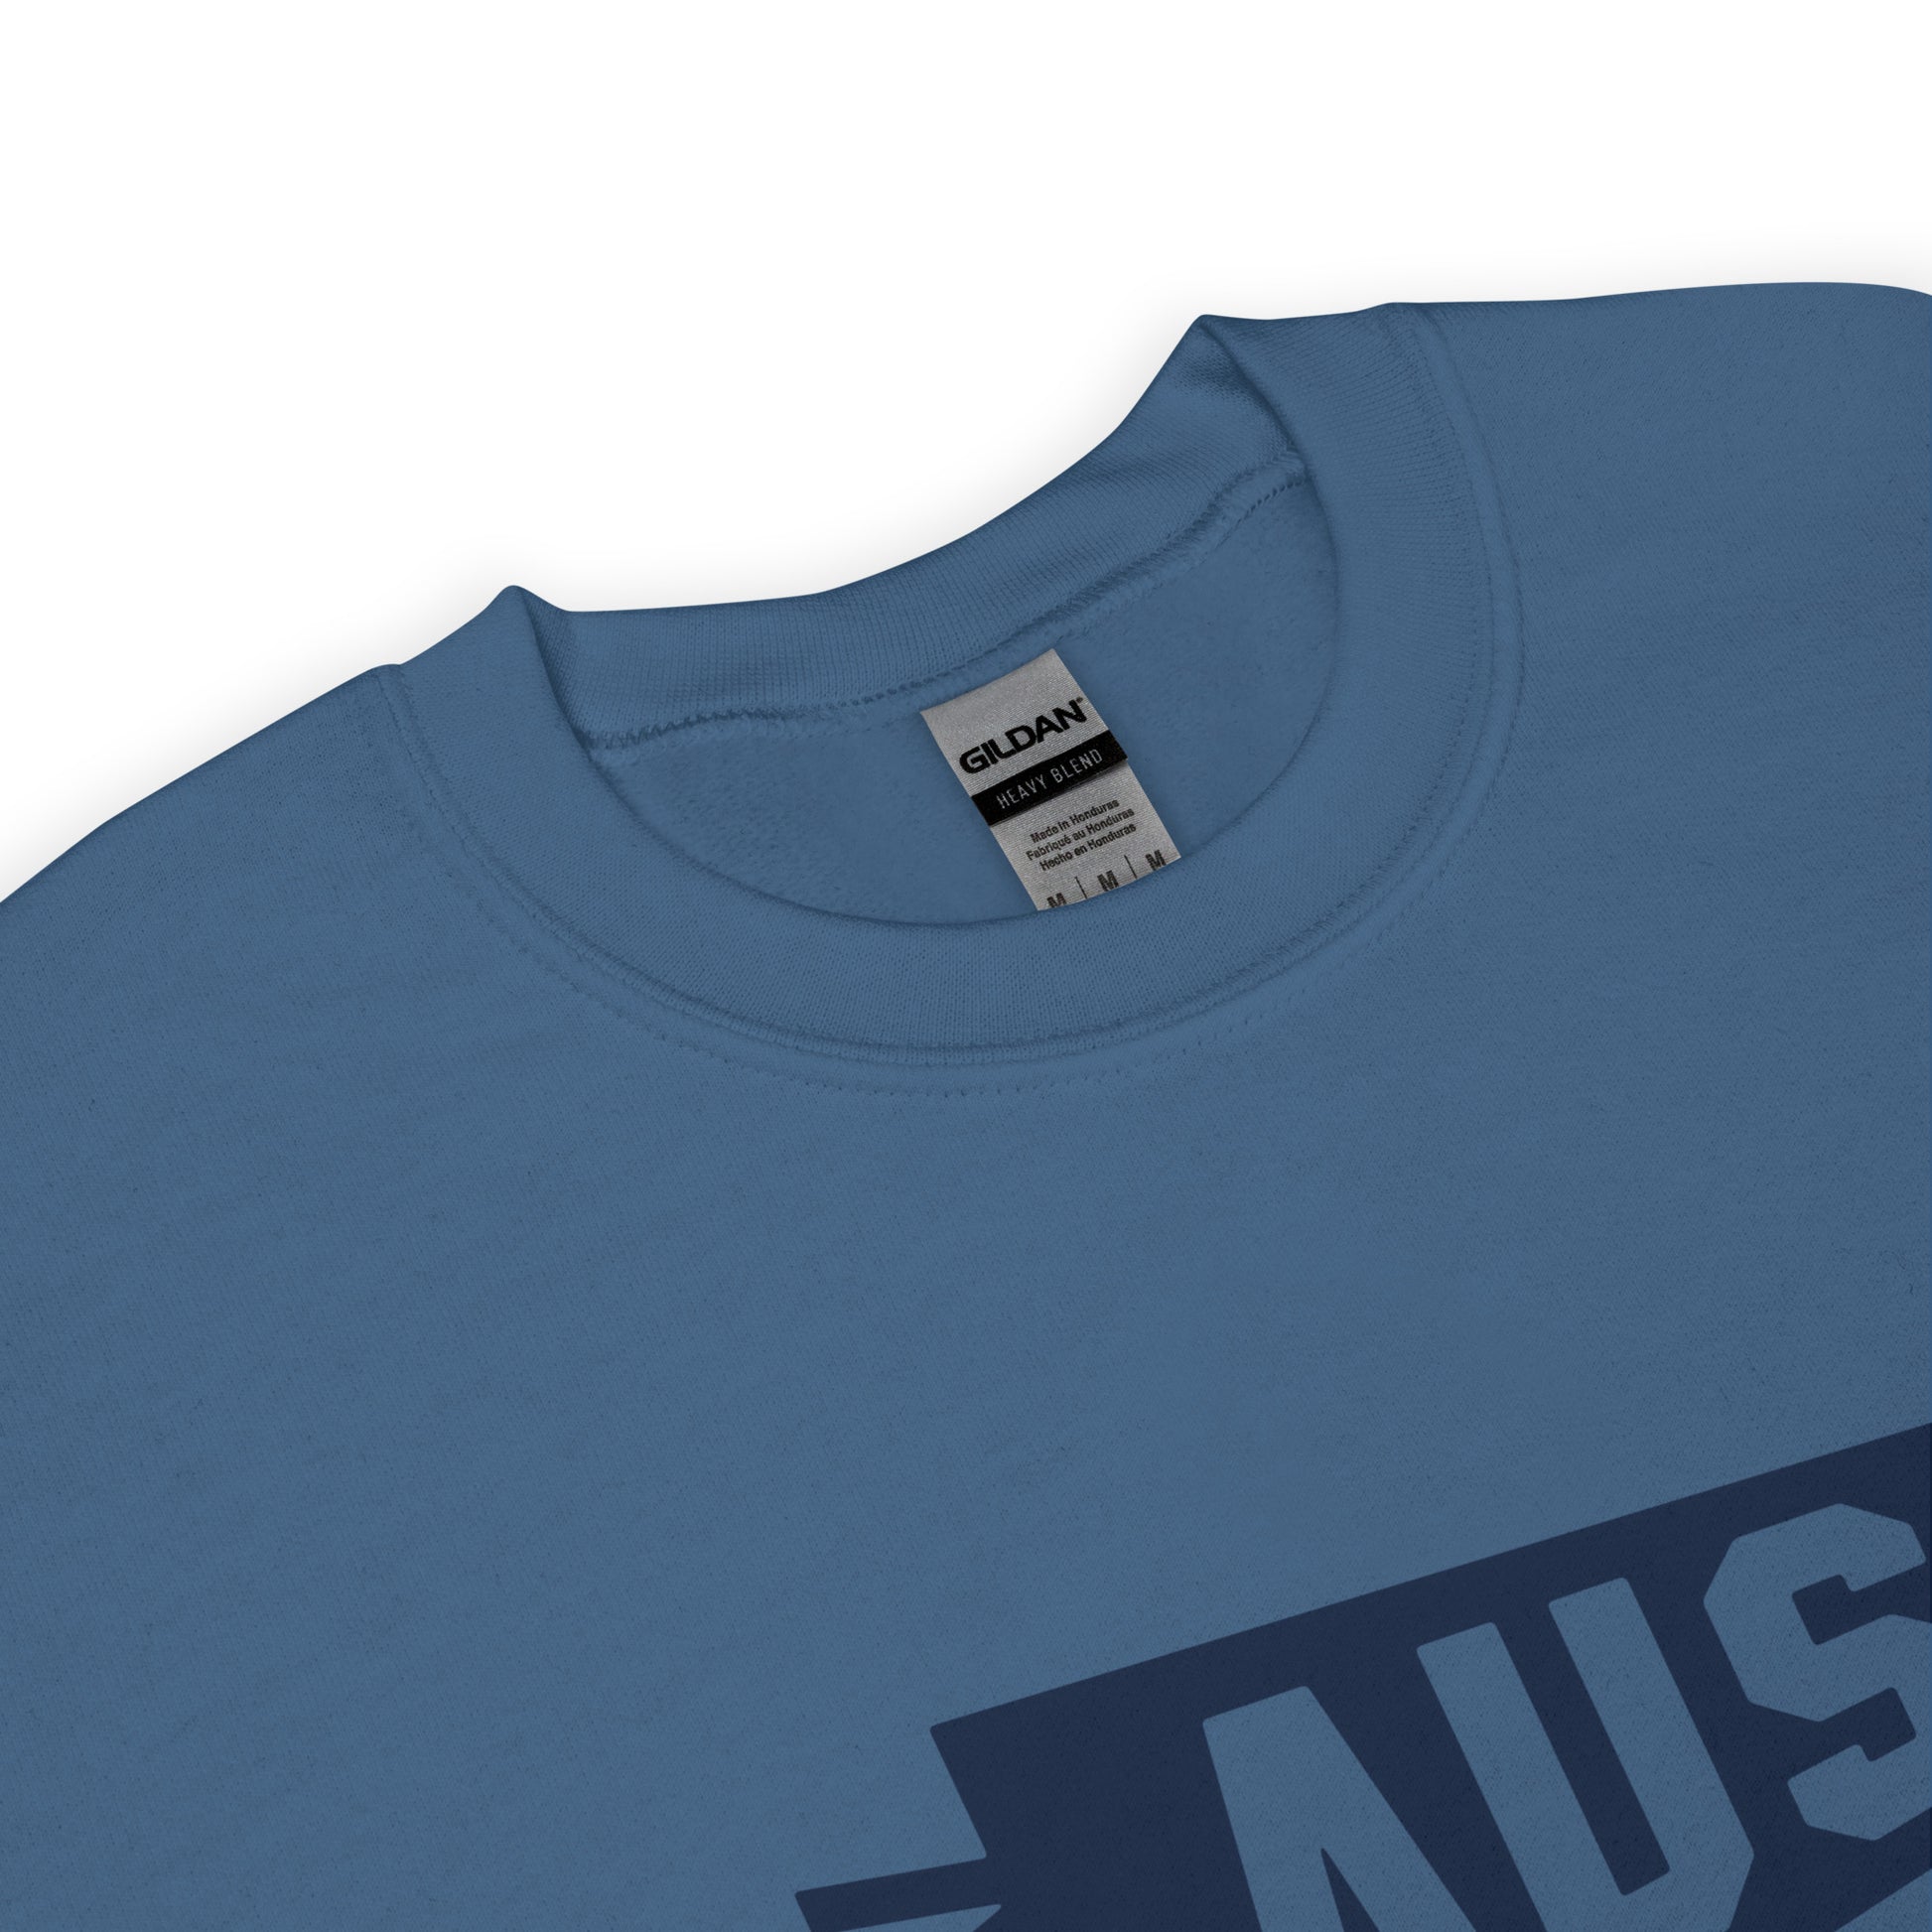 Airport Code Sweatshirt - Navy Blue Graphic • AUS Austin • YHM Designs - Image 04